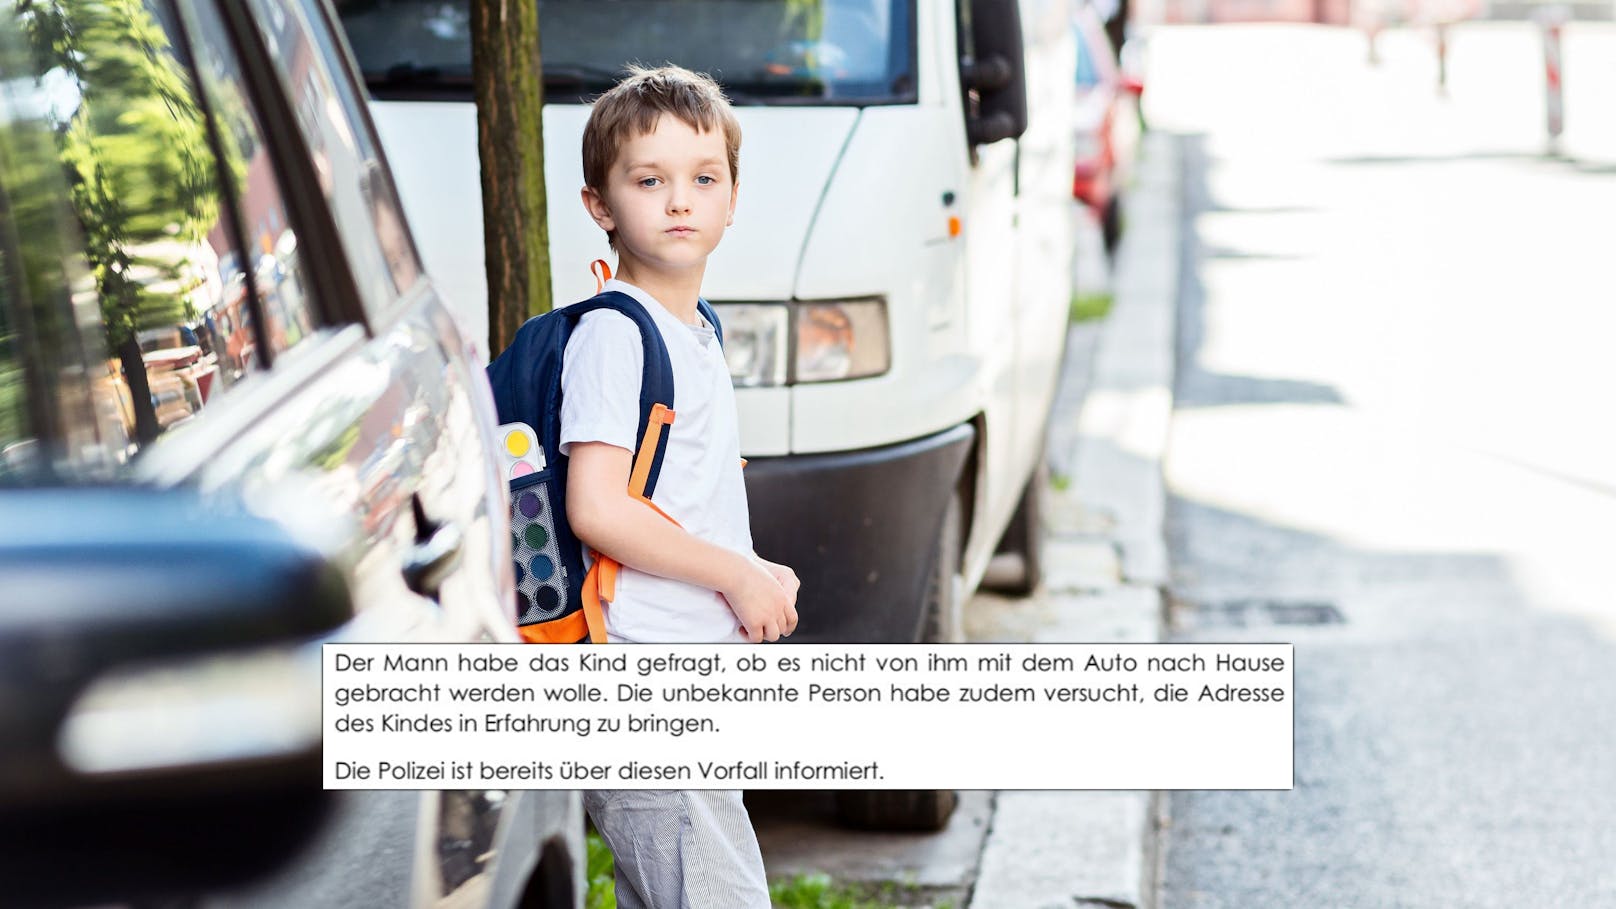 Alarm vor Schule in NÖ! Mann soll Kinder in Auto locken